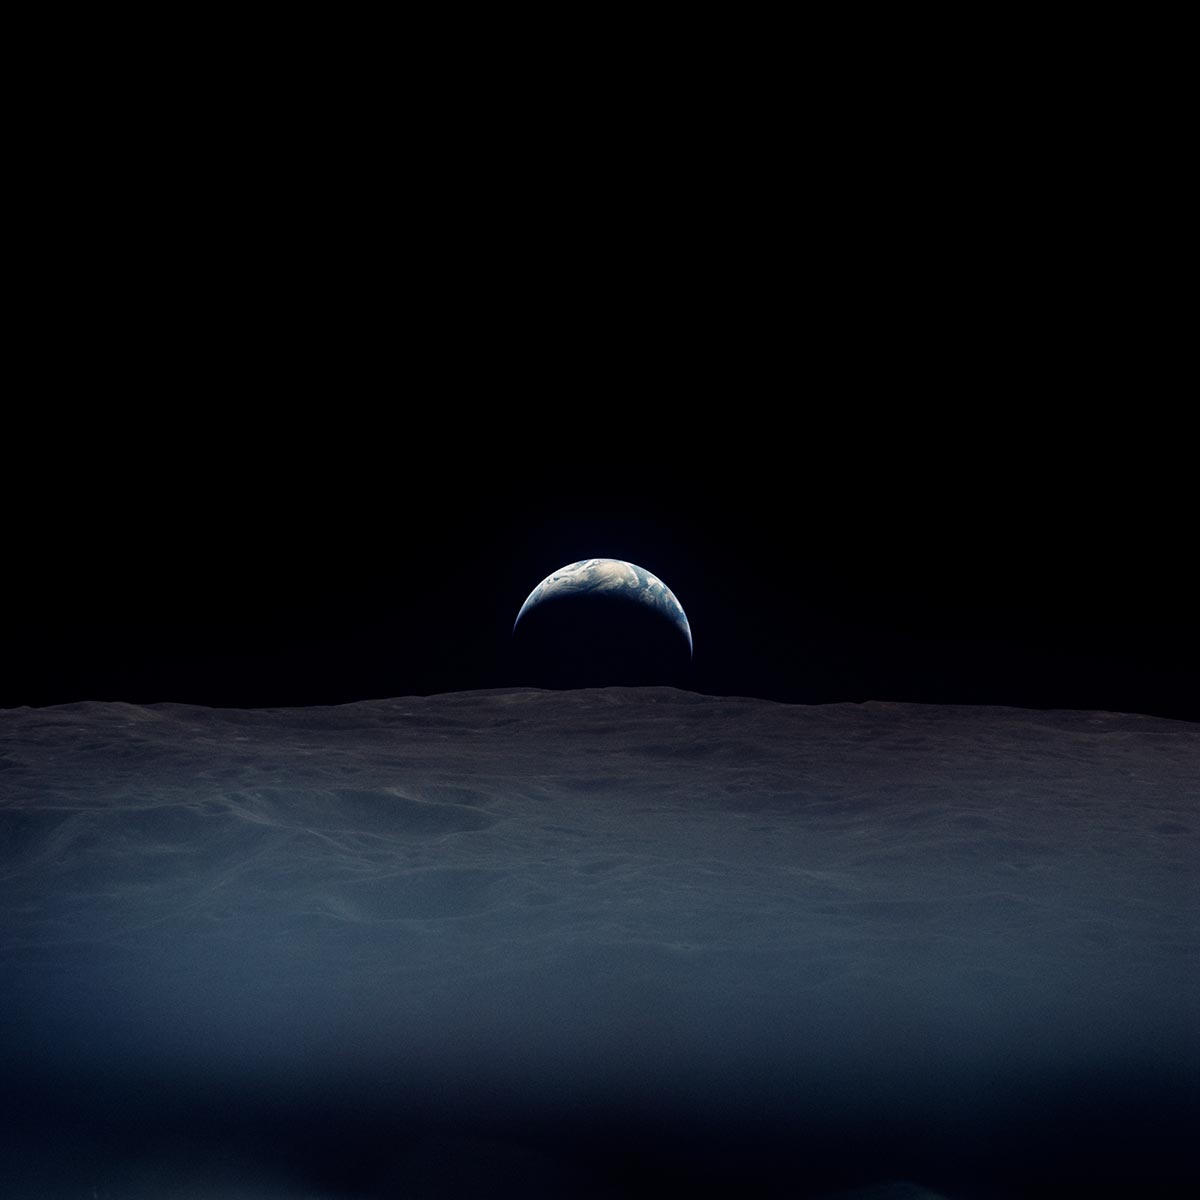 La Terra fotografata dall'astronauta Richard Gordon dell'Apollo 12